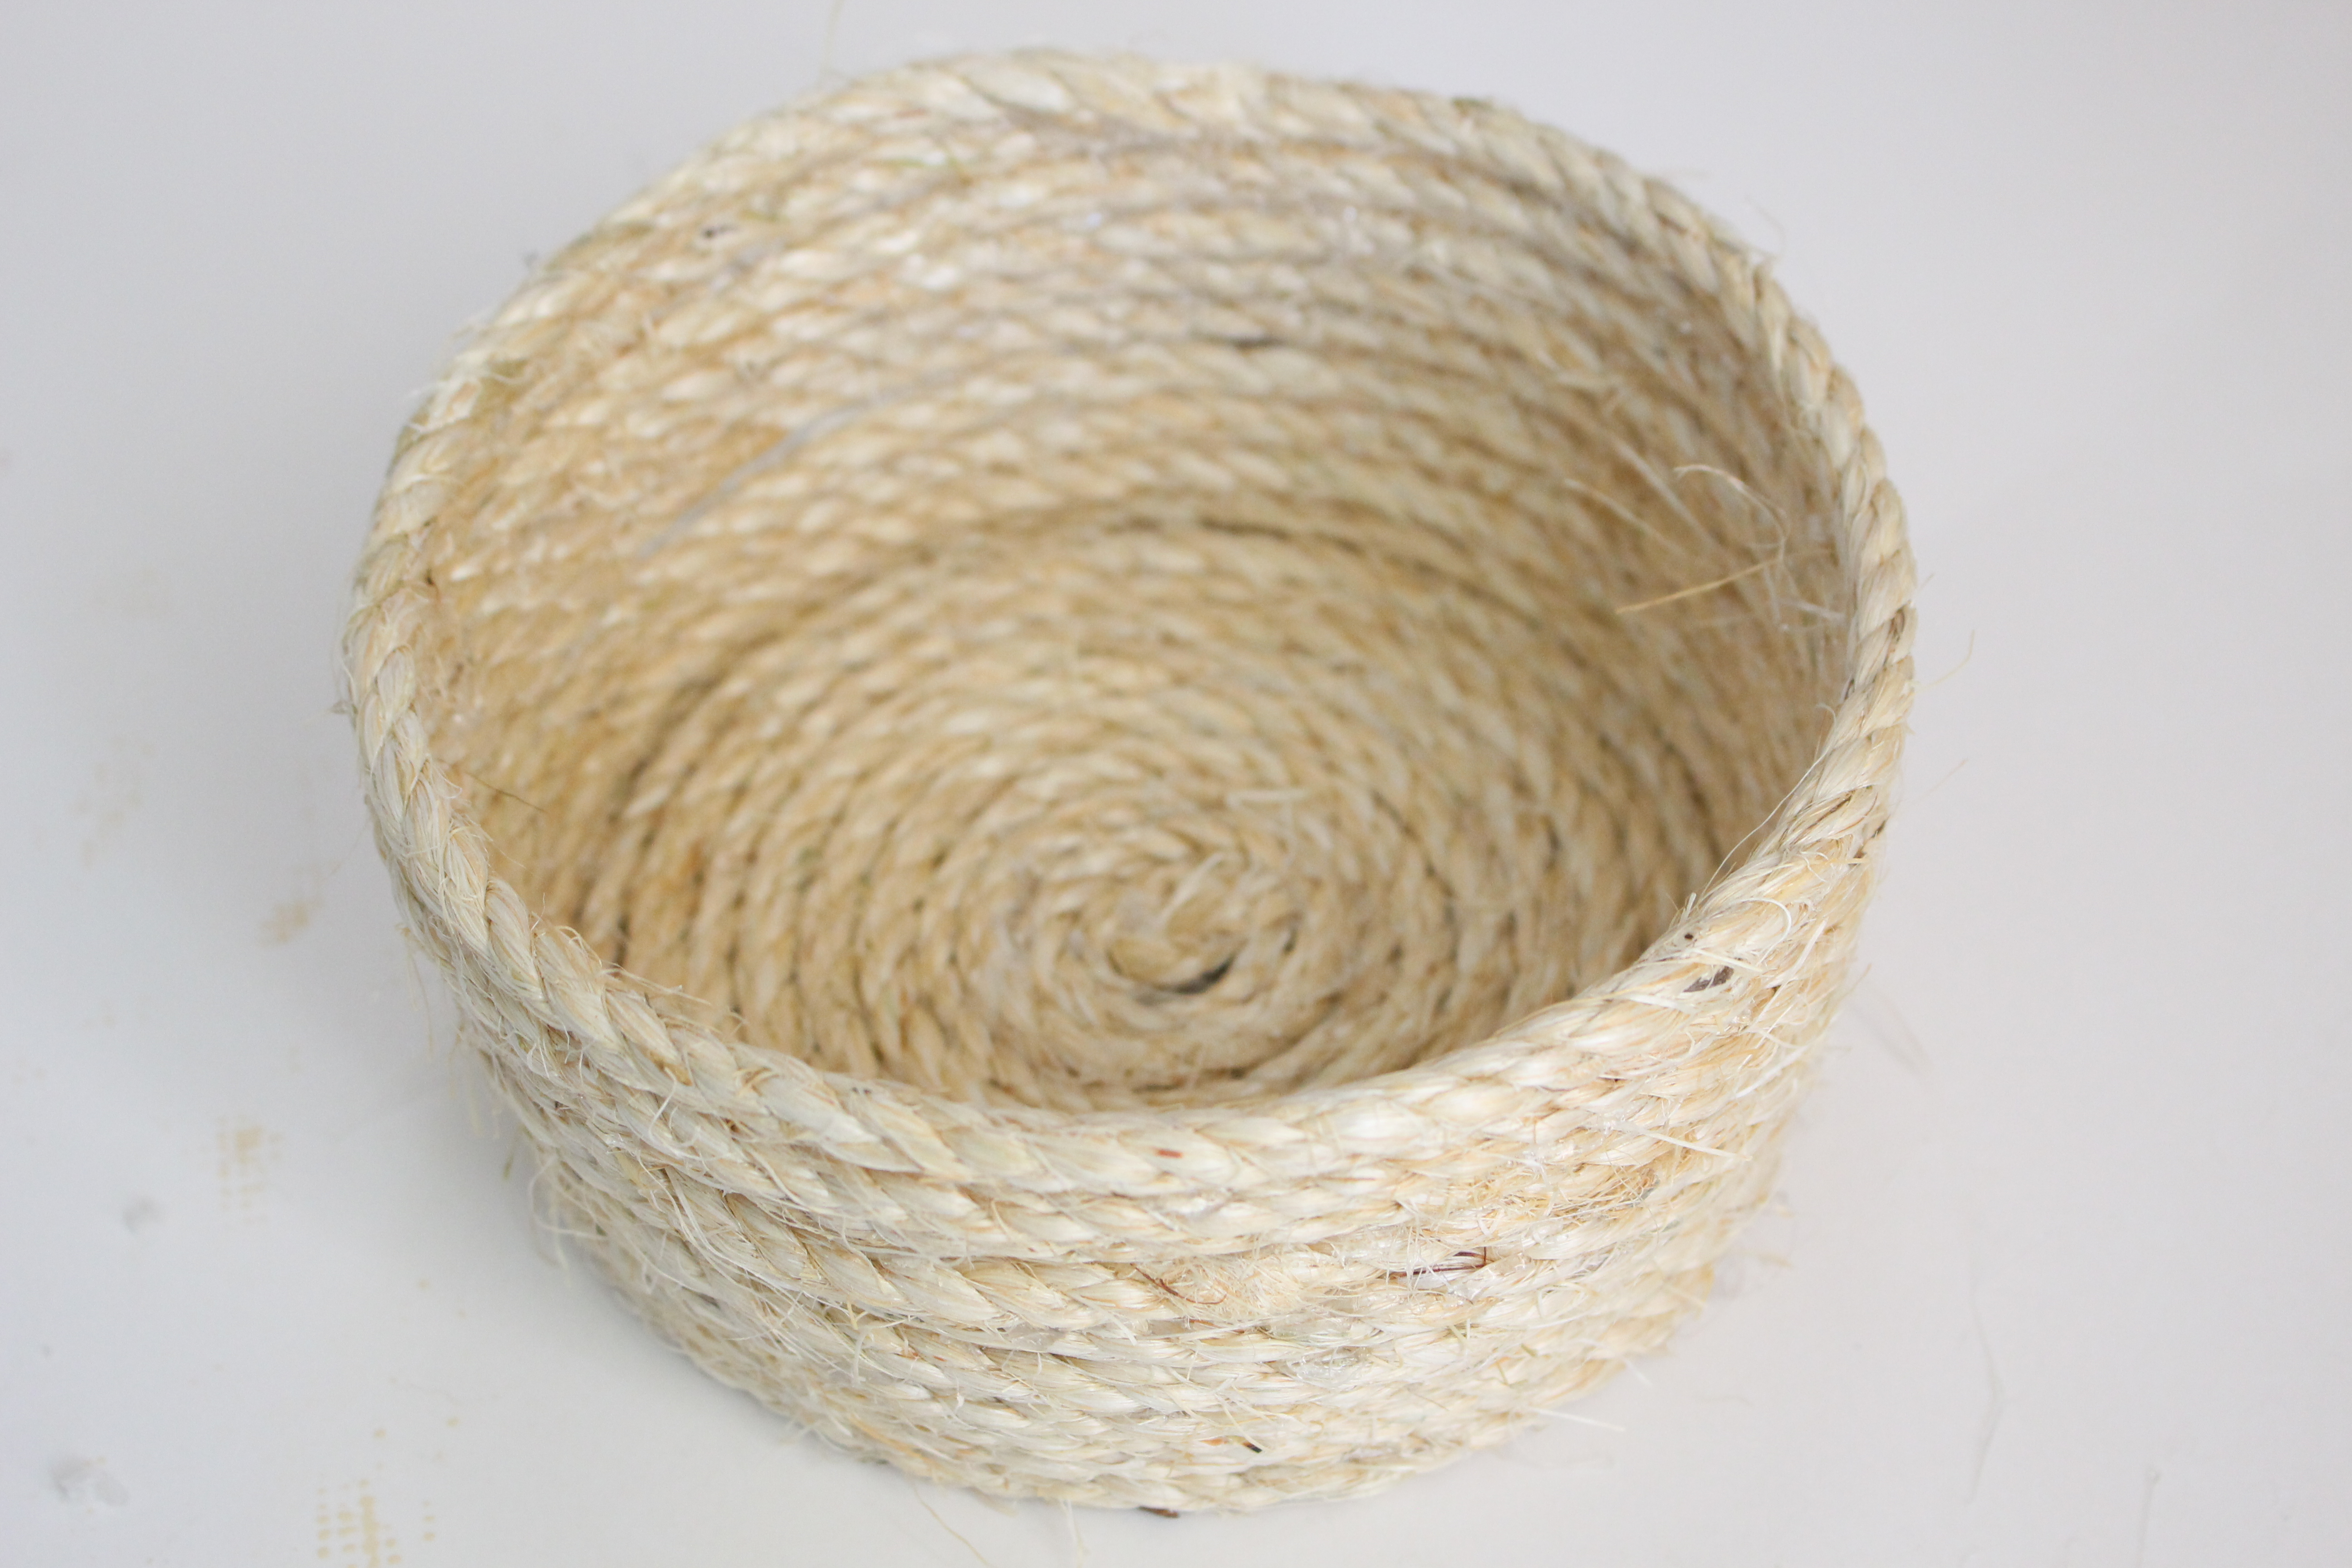 Sisal Rope Basket with Tassels- DIY rope projects- how to make a rope basket- how to make tassels- crafts- rope- DI